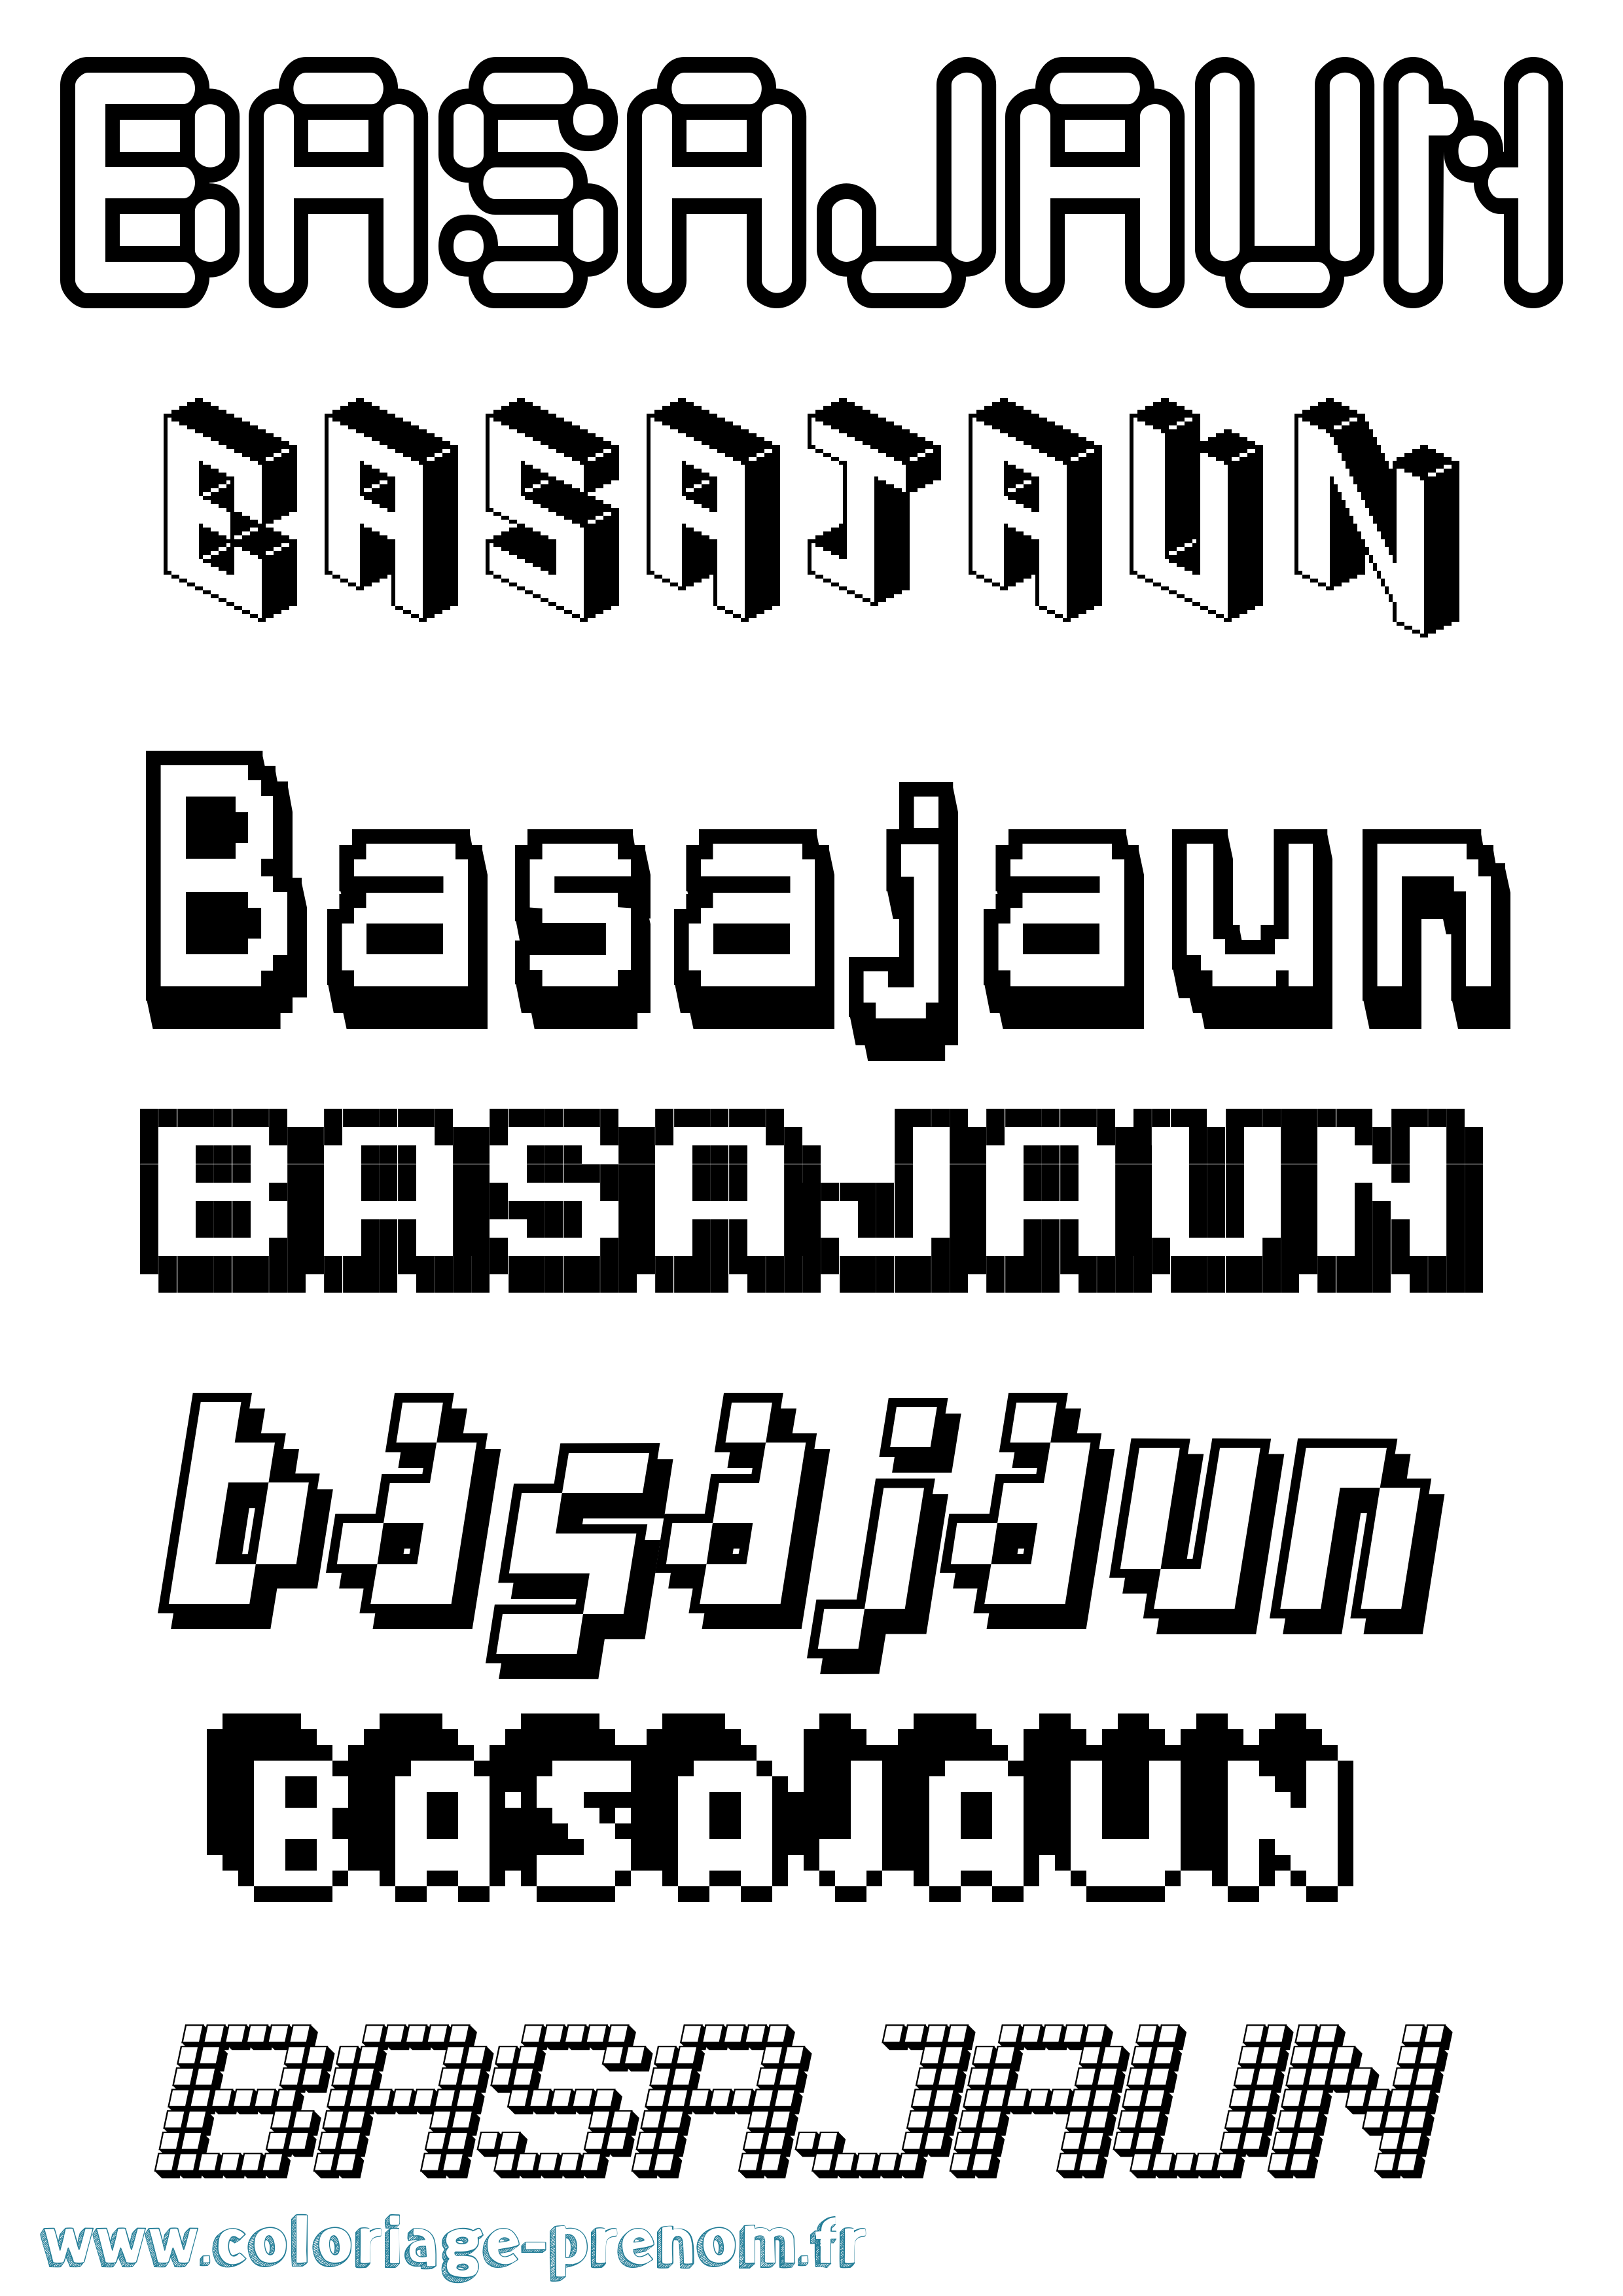 Coloriage prénom Basajaun Pixel